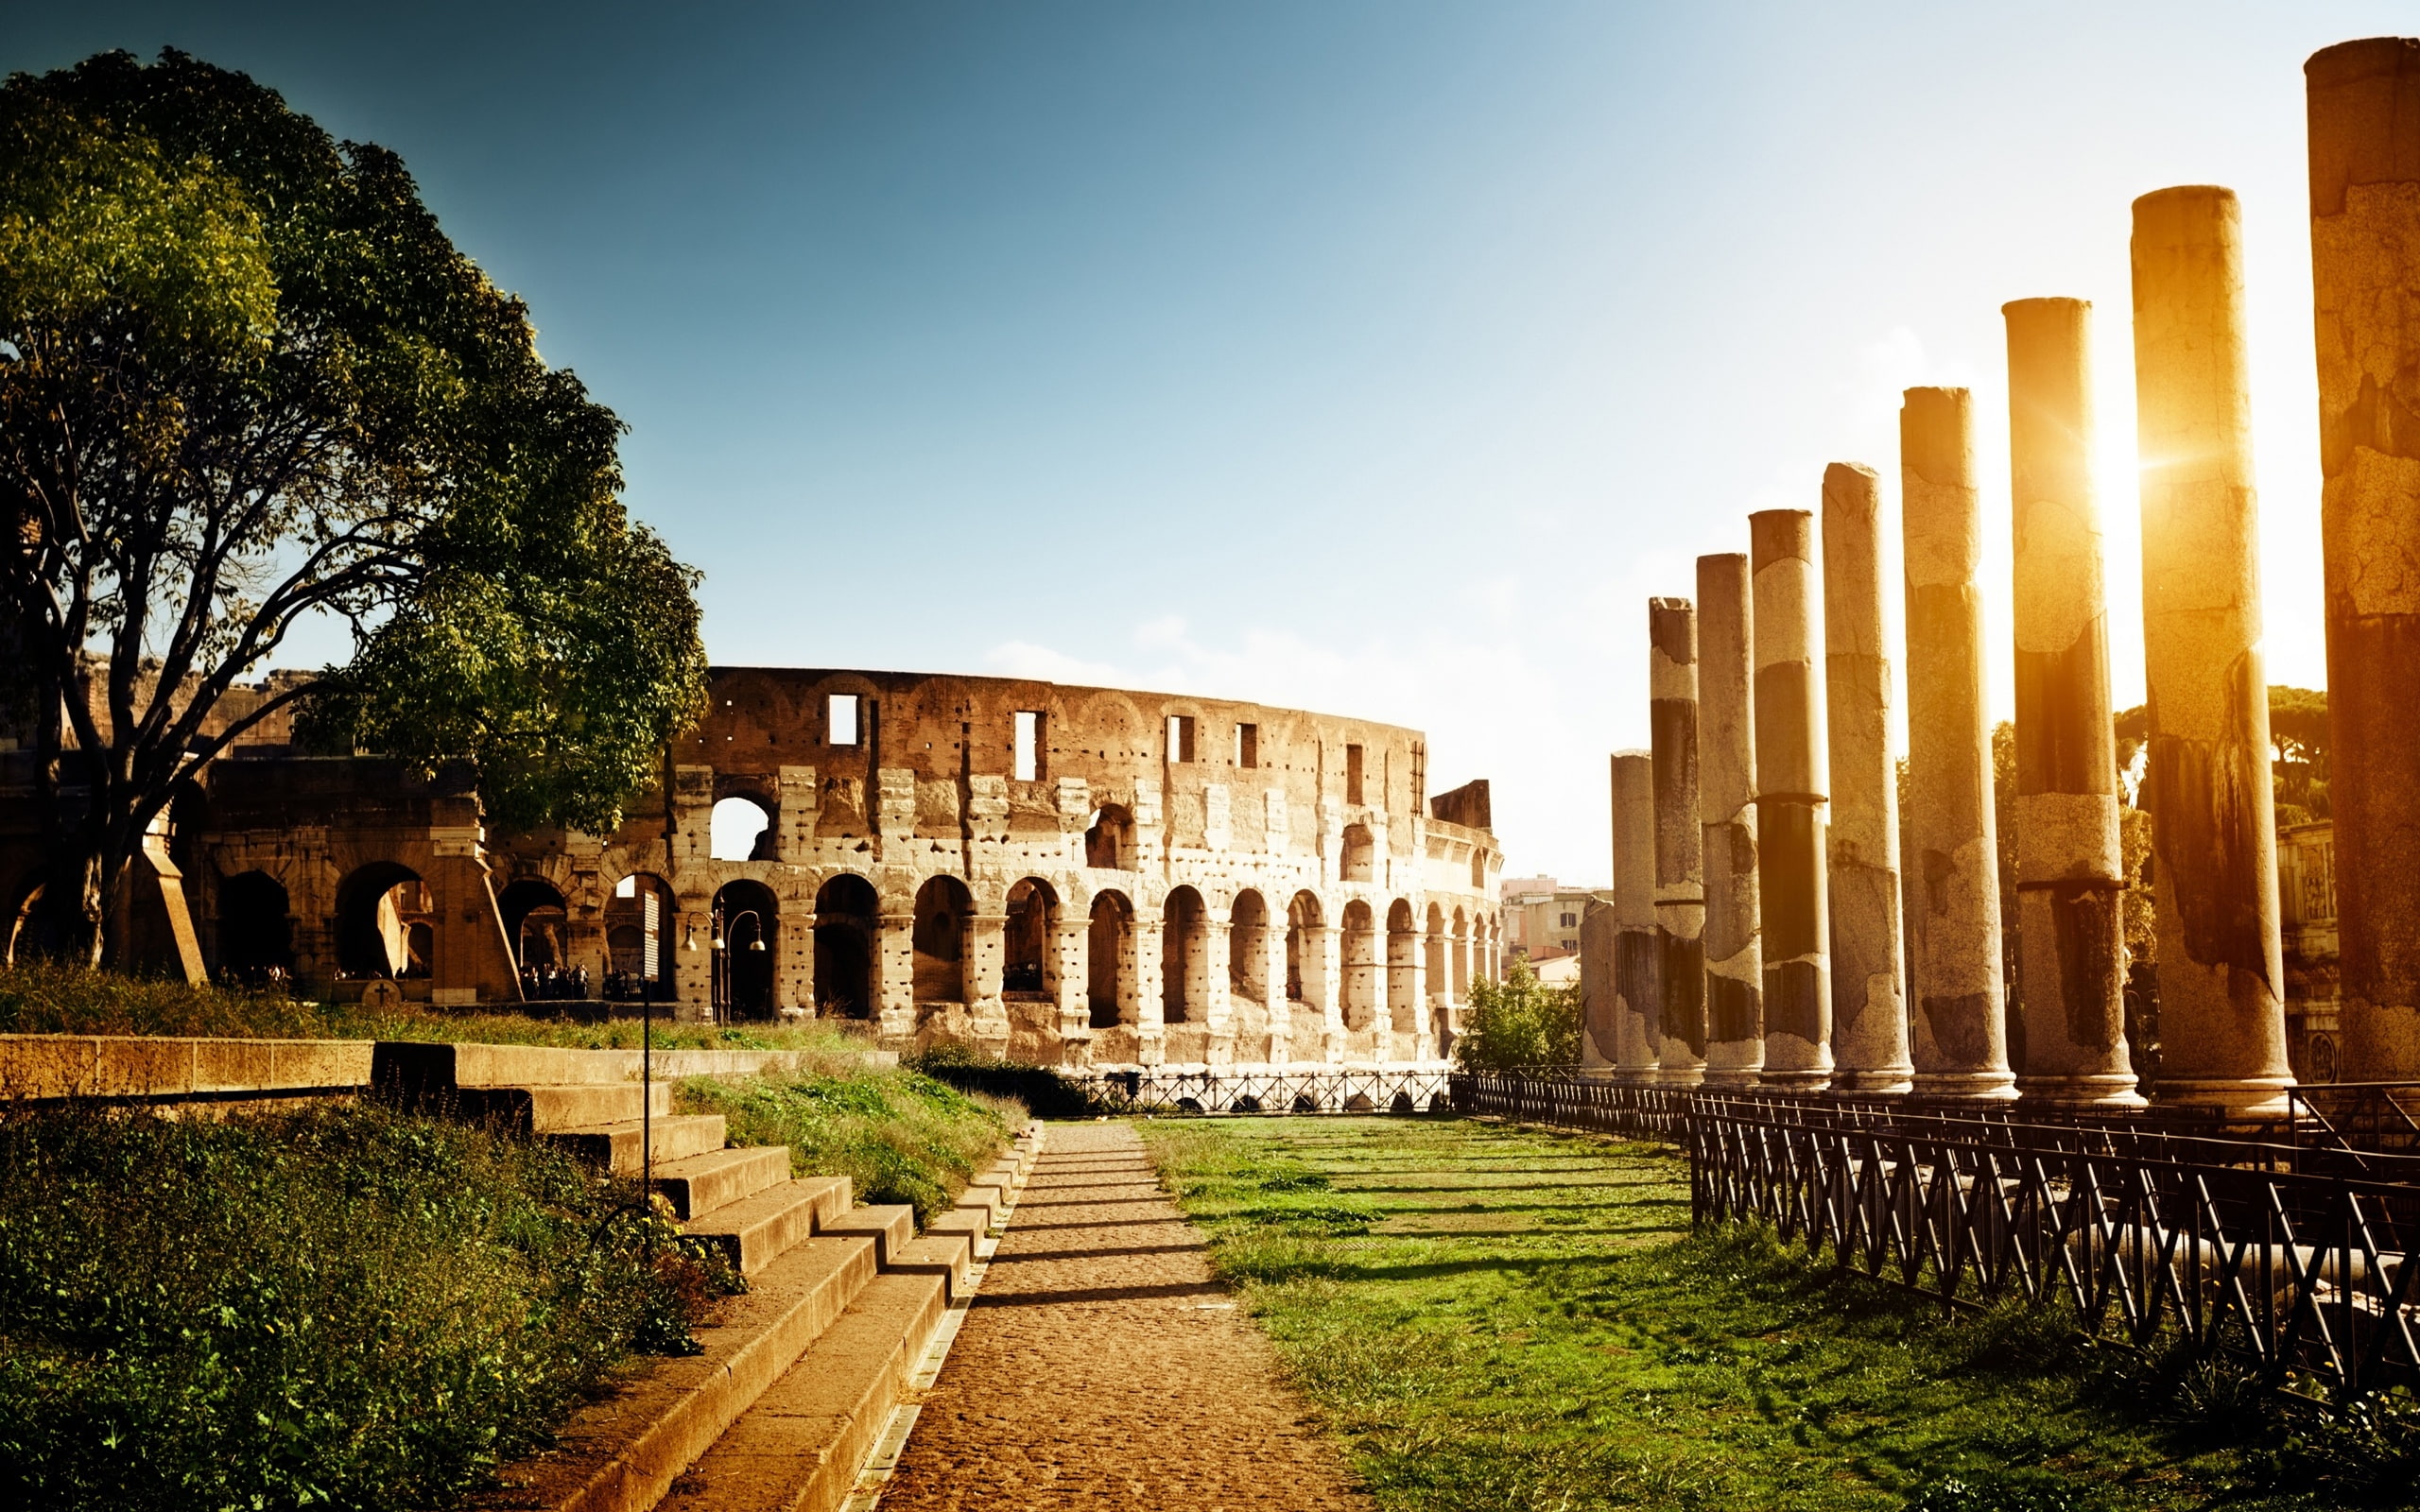 Colosseum, Italy, architecture, ruins, sun